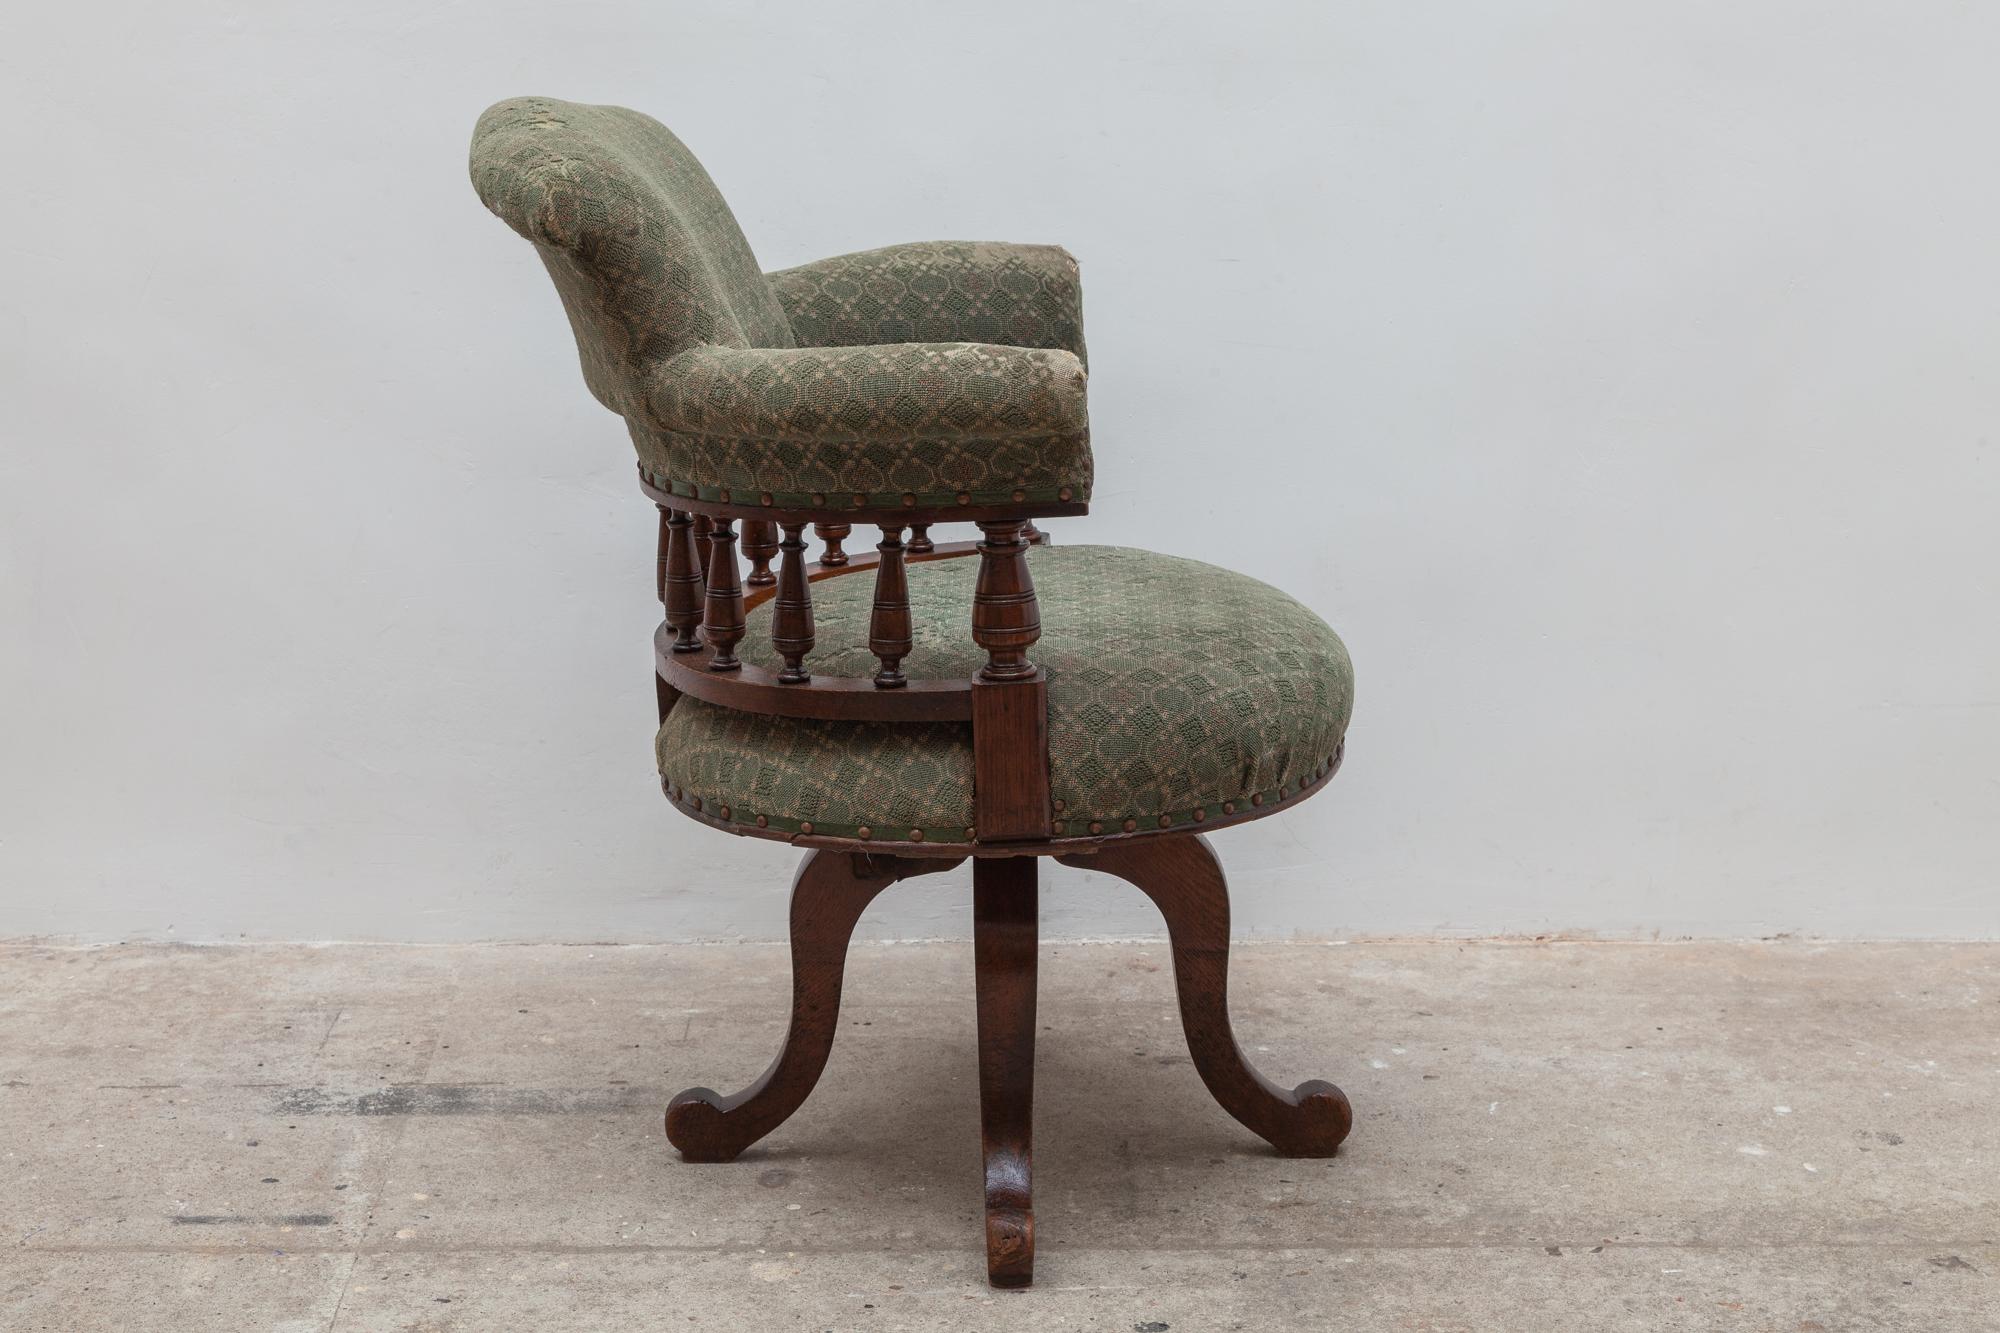 antique office chair tilt mechanism